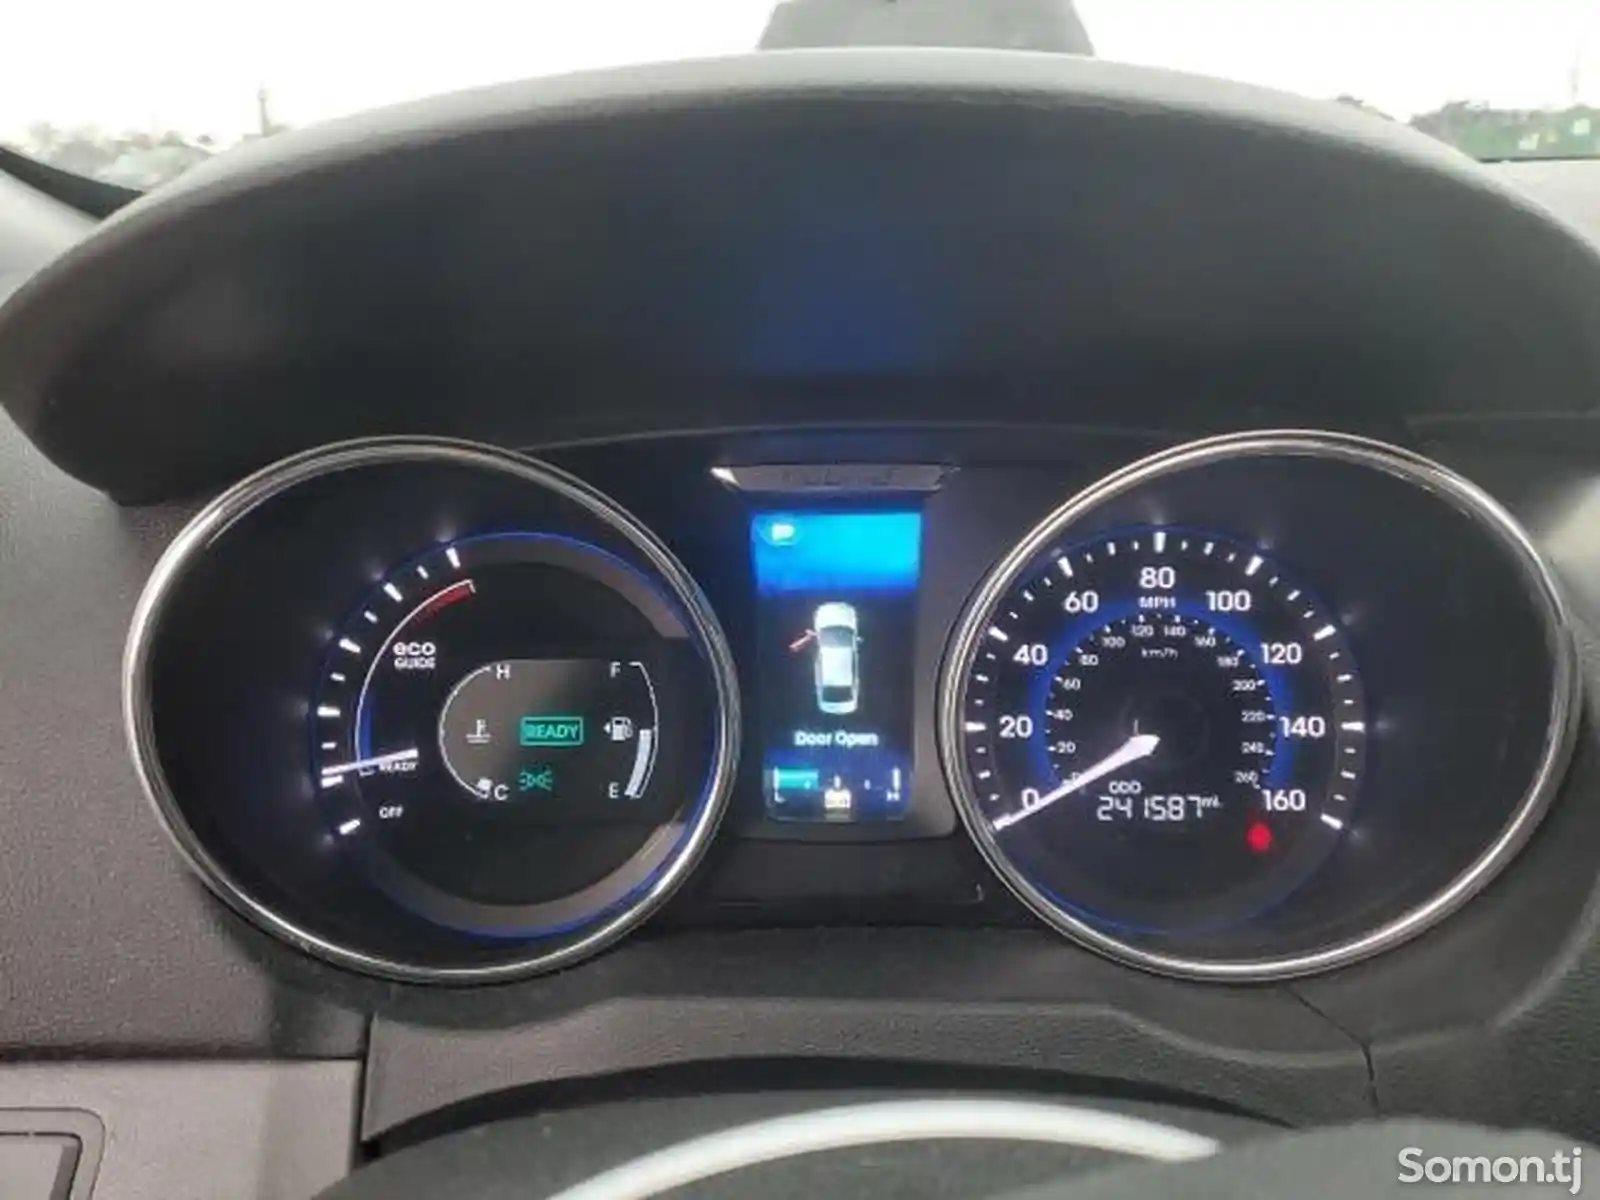 Hyundai Sonata, 2014-6